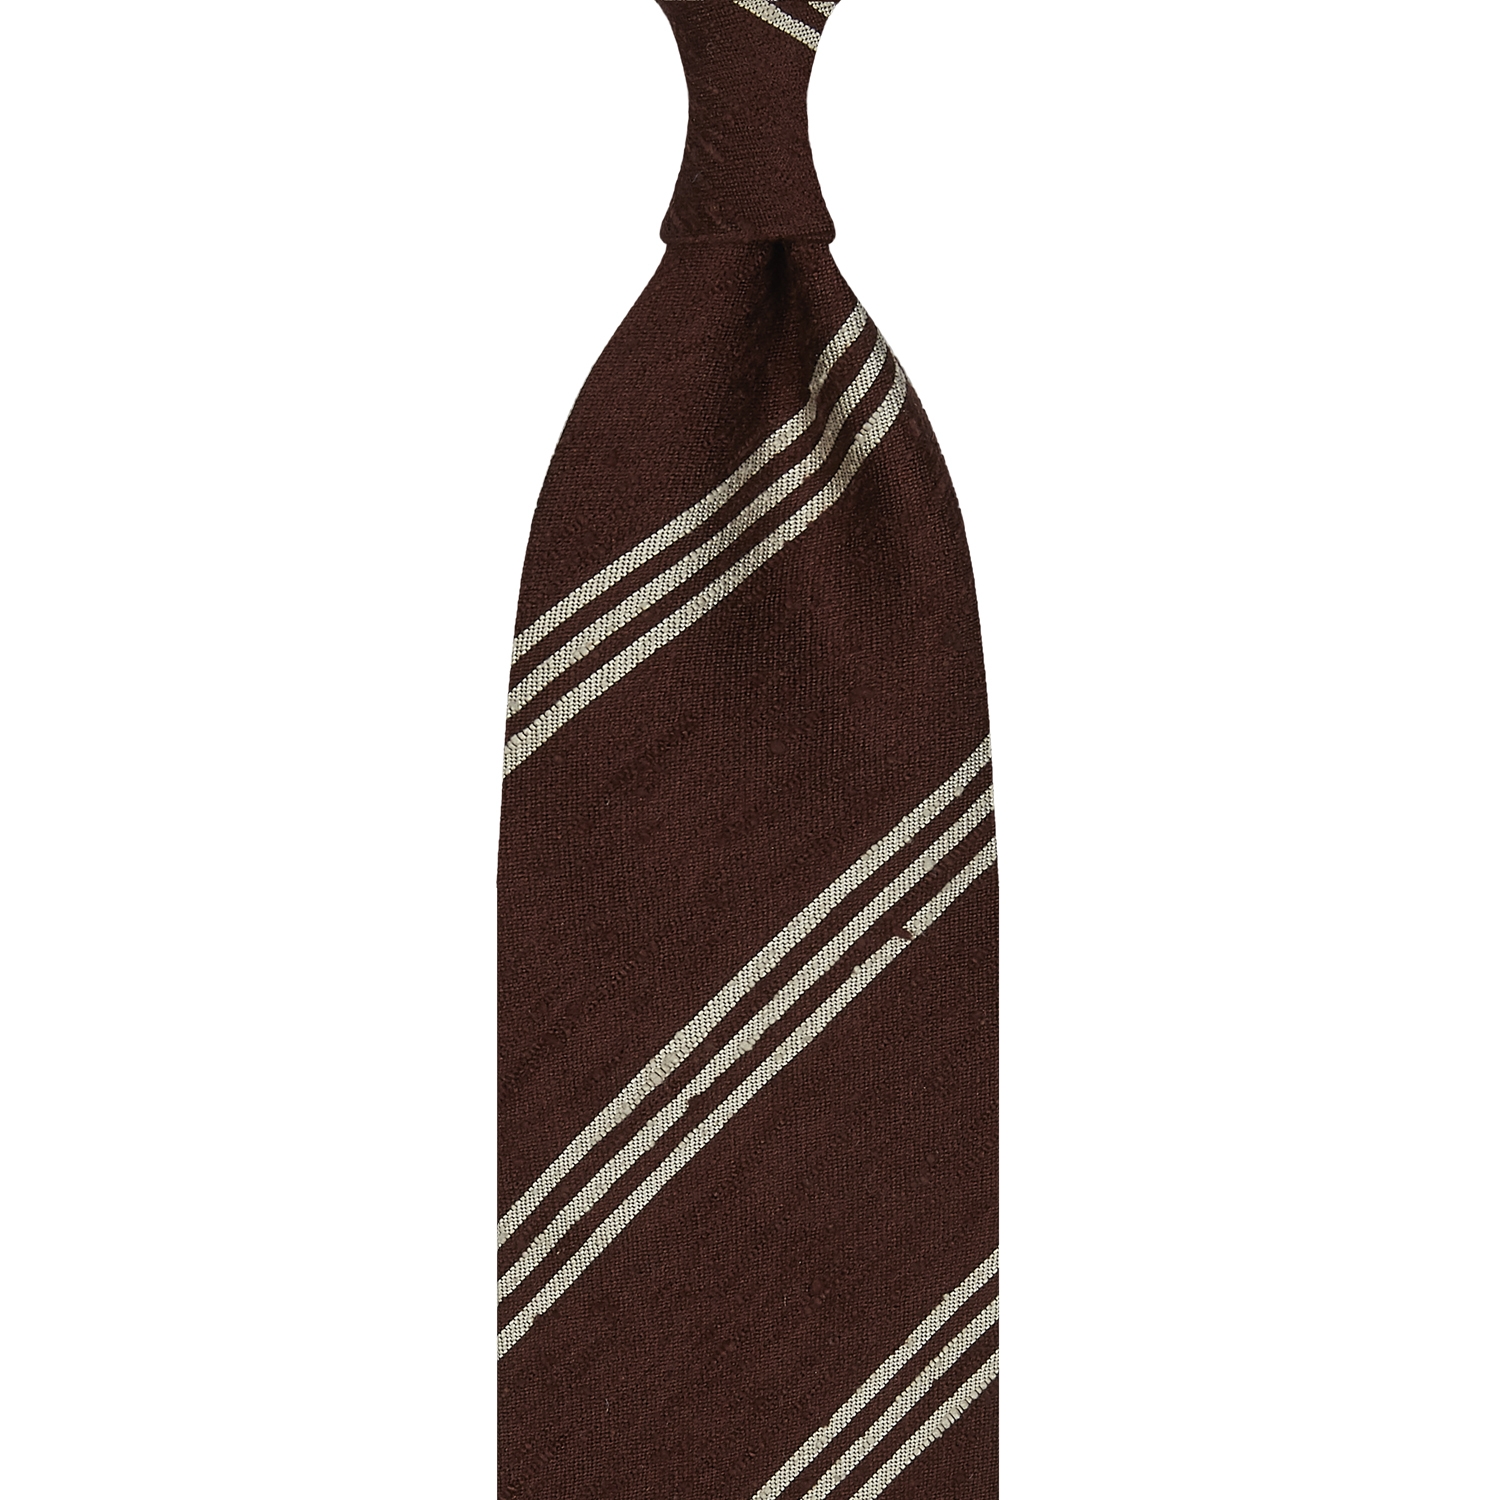 Cravate rayée en shantung de soie marron et beige, roulée à la main